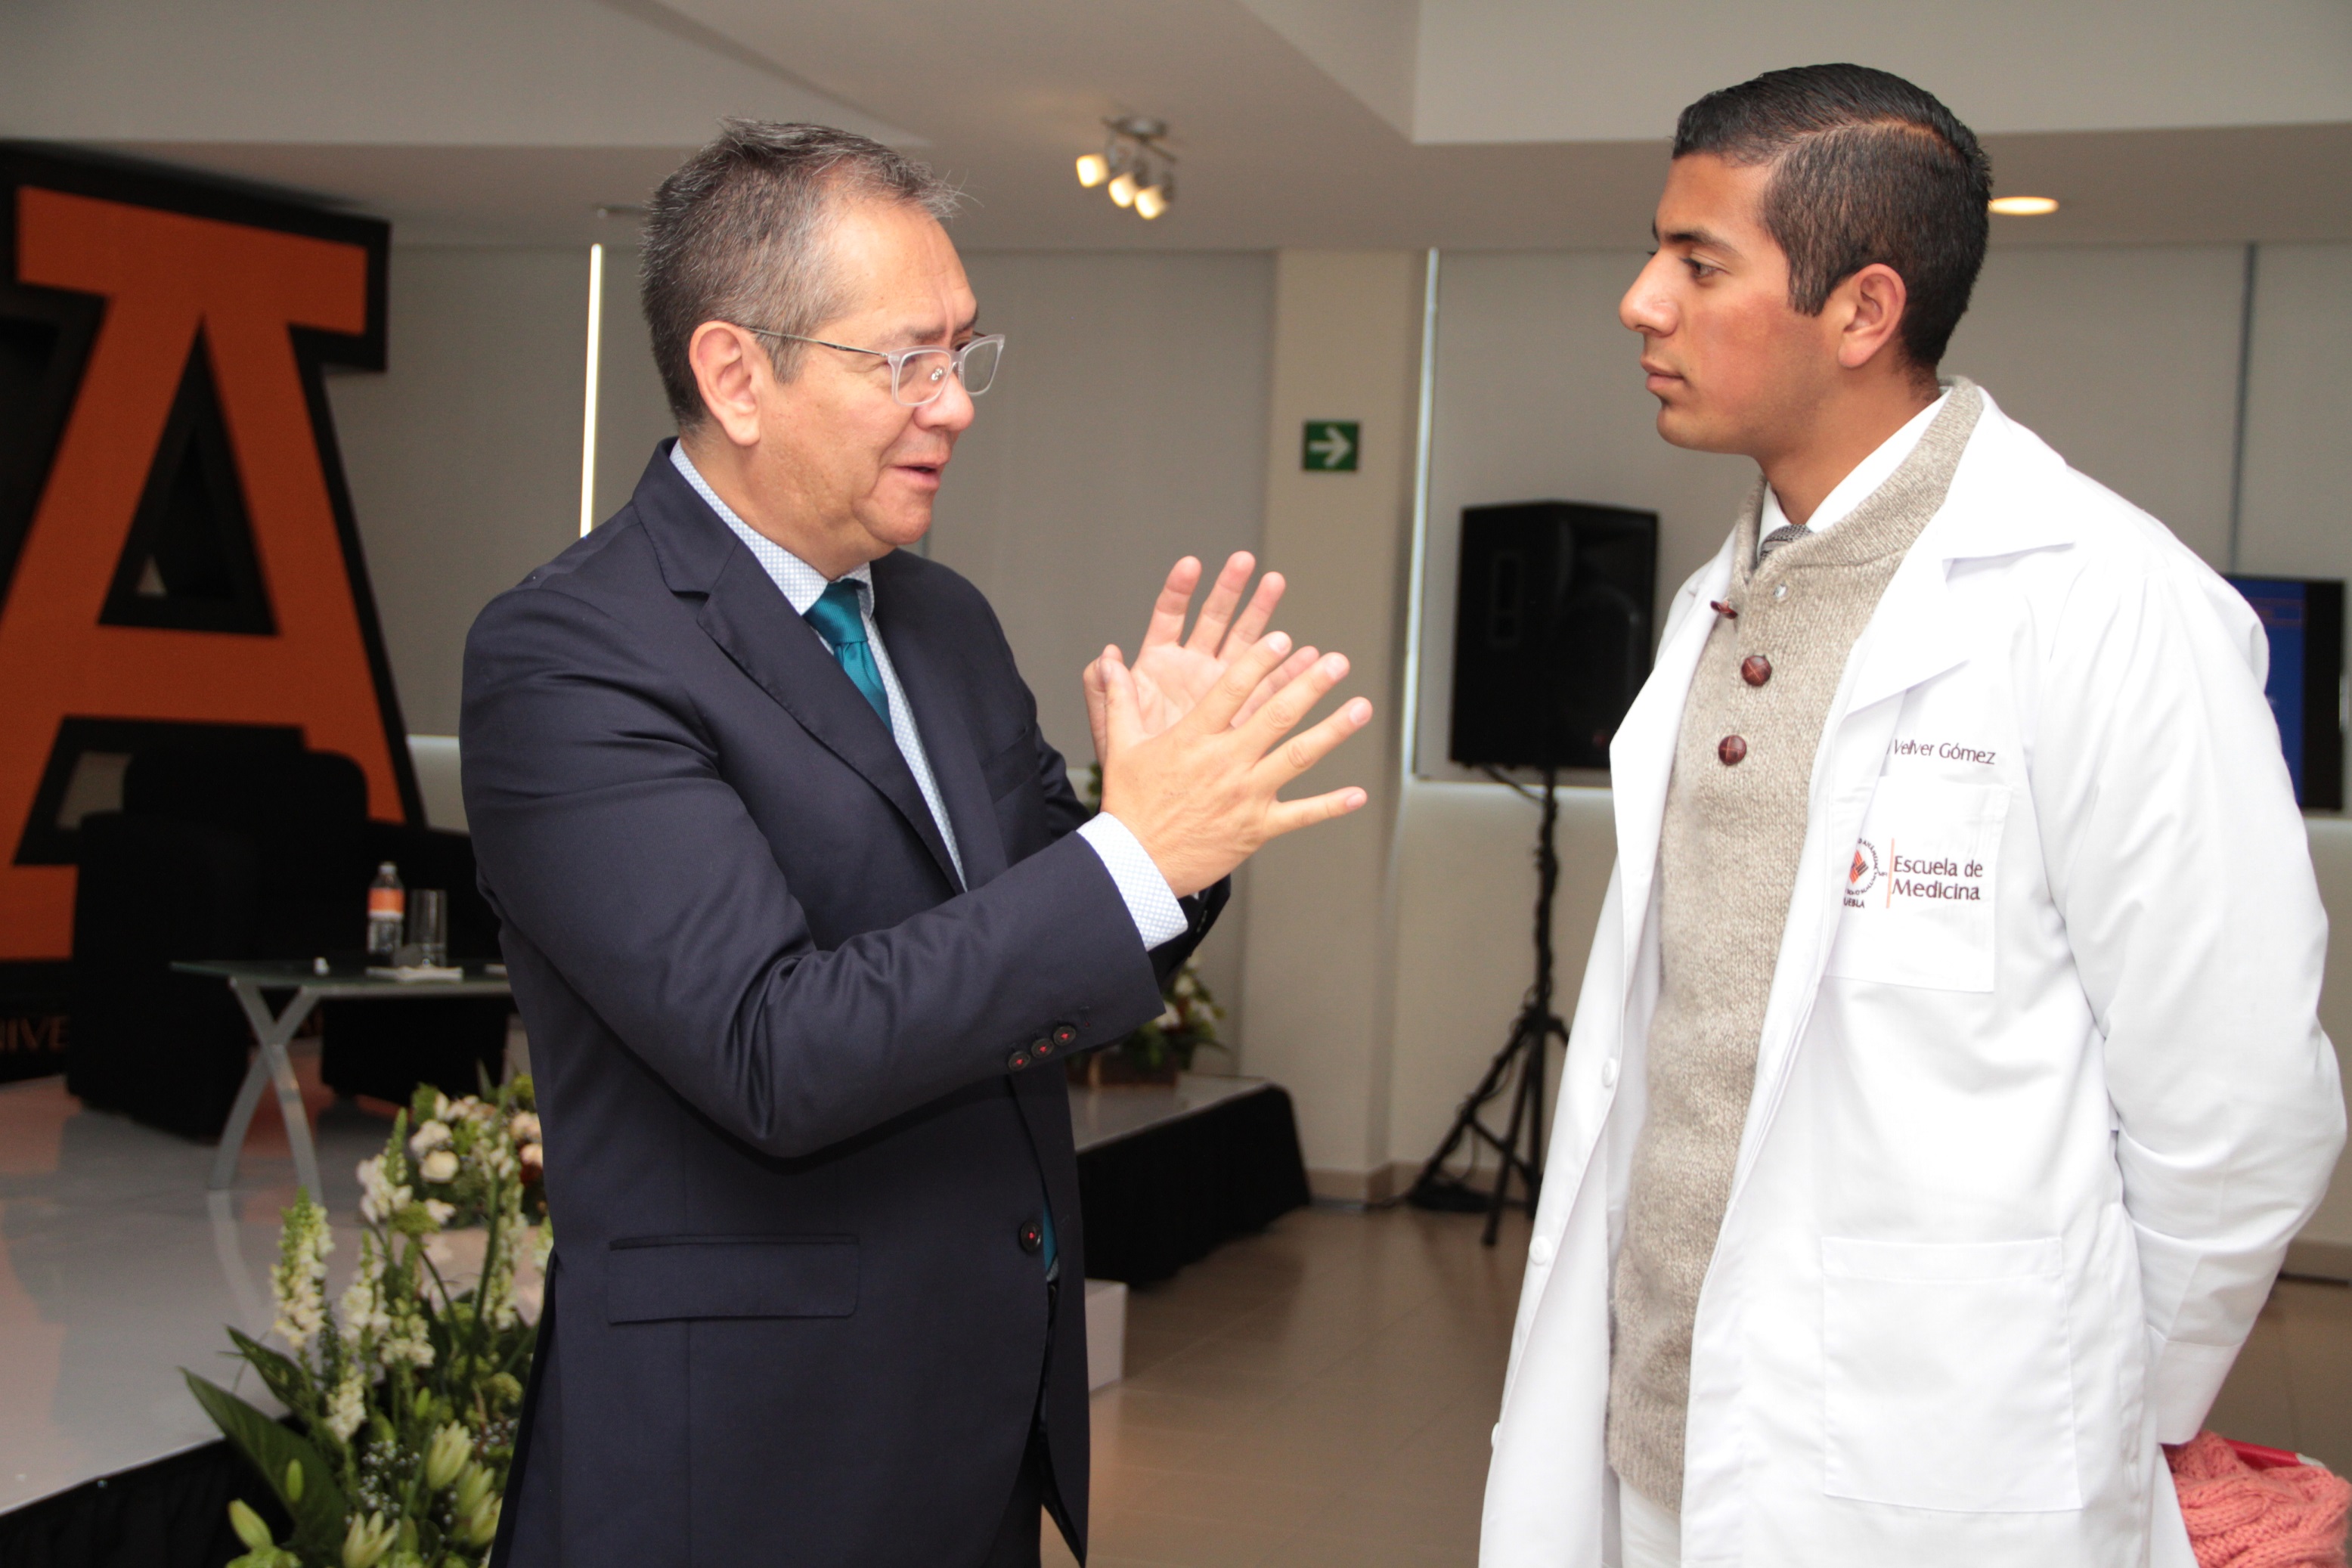 La revolución tecnológica de la cirugía moderna, eje central de la Cátedra de Medicina de la Universidad Anáhuac